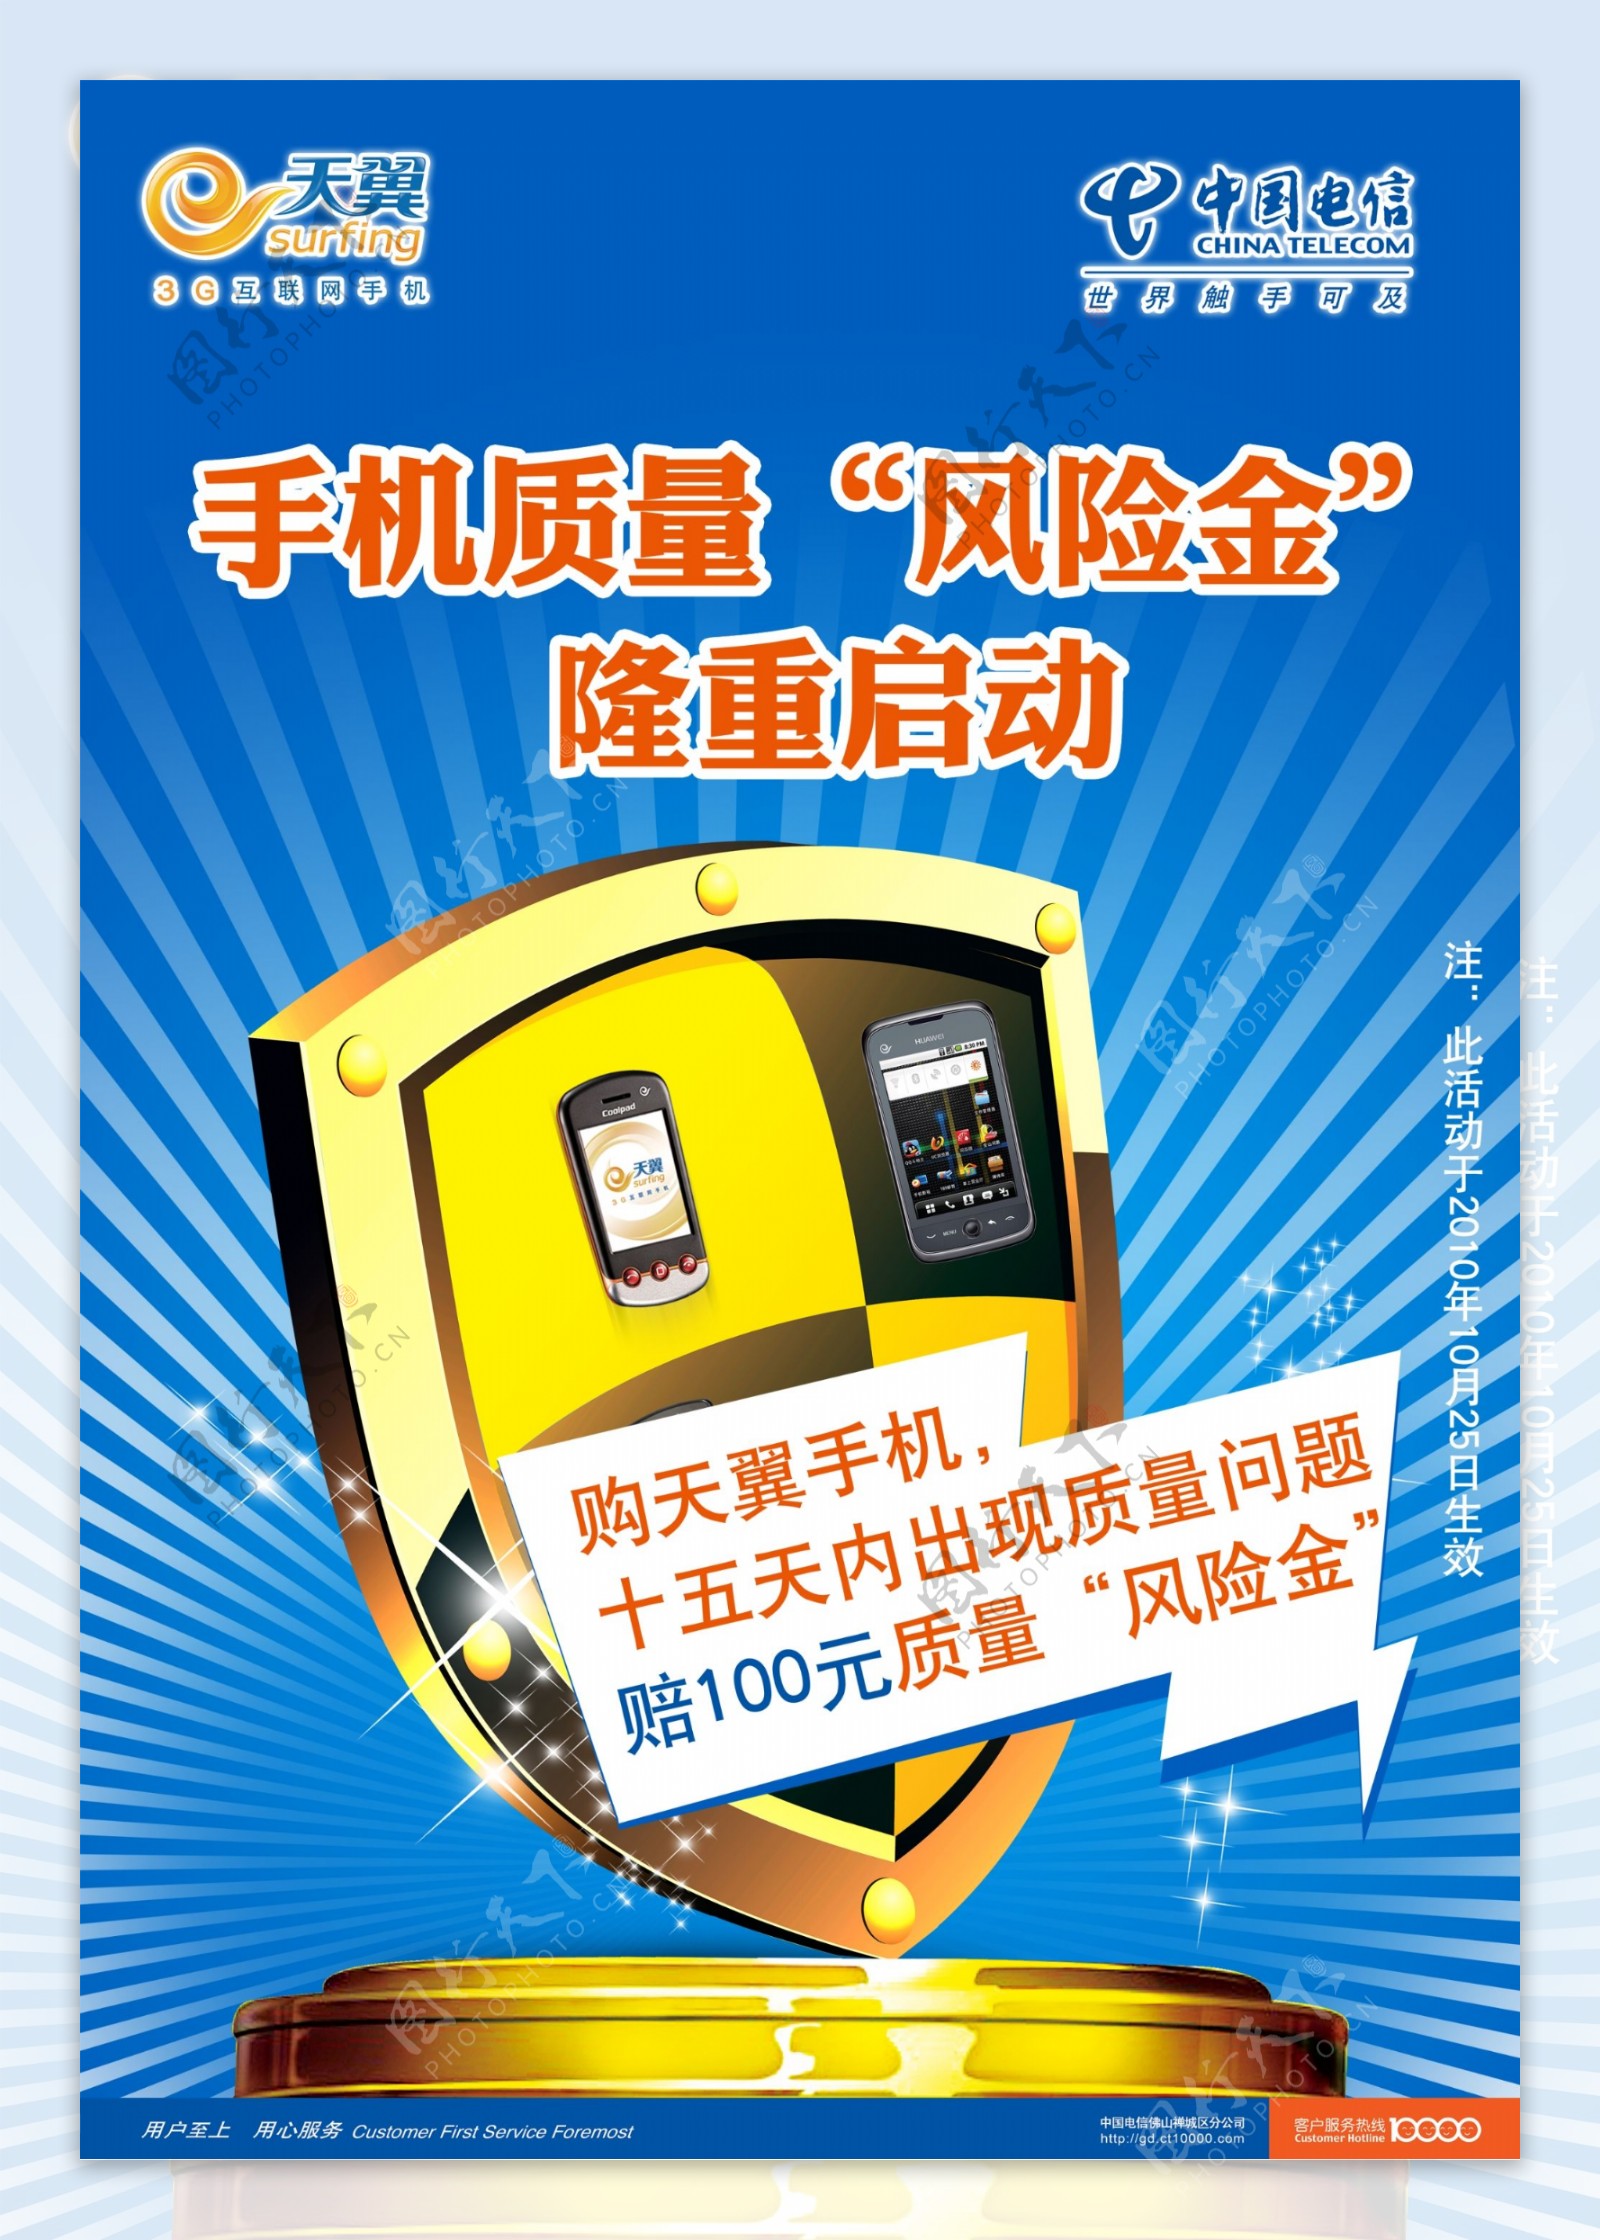 中国电信手机质量保证图片